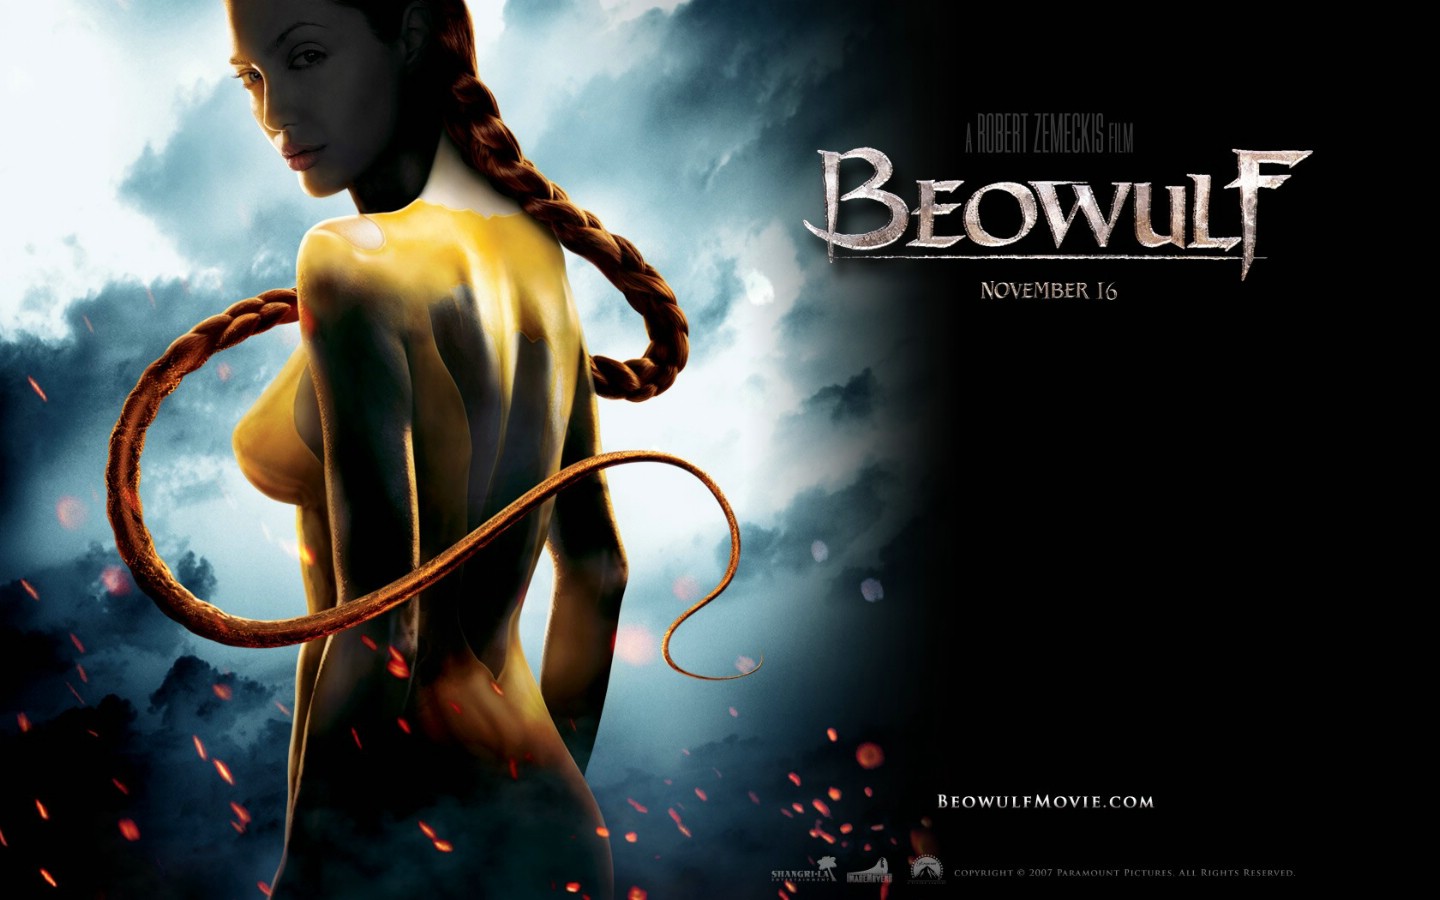 壁纸1440x900电影壁纸 贝奥武夫 降龙伏魔 Beowulf 2007 贝奥武夫 北海的诅咒 贝奥武夫 电影壁纸 Movie Wallpaper Beowulf 2007壁纸 《贝奥武夫 Beowulf(2007)》壁纸 《贝奥武夫 Beowulf(2007)》图片 《贝奥武夫 Beowulf(2007)》素材 影视壁纸 影视图库 影视图片素材桌面壁纸